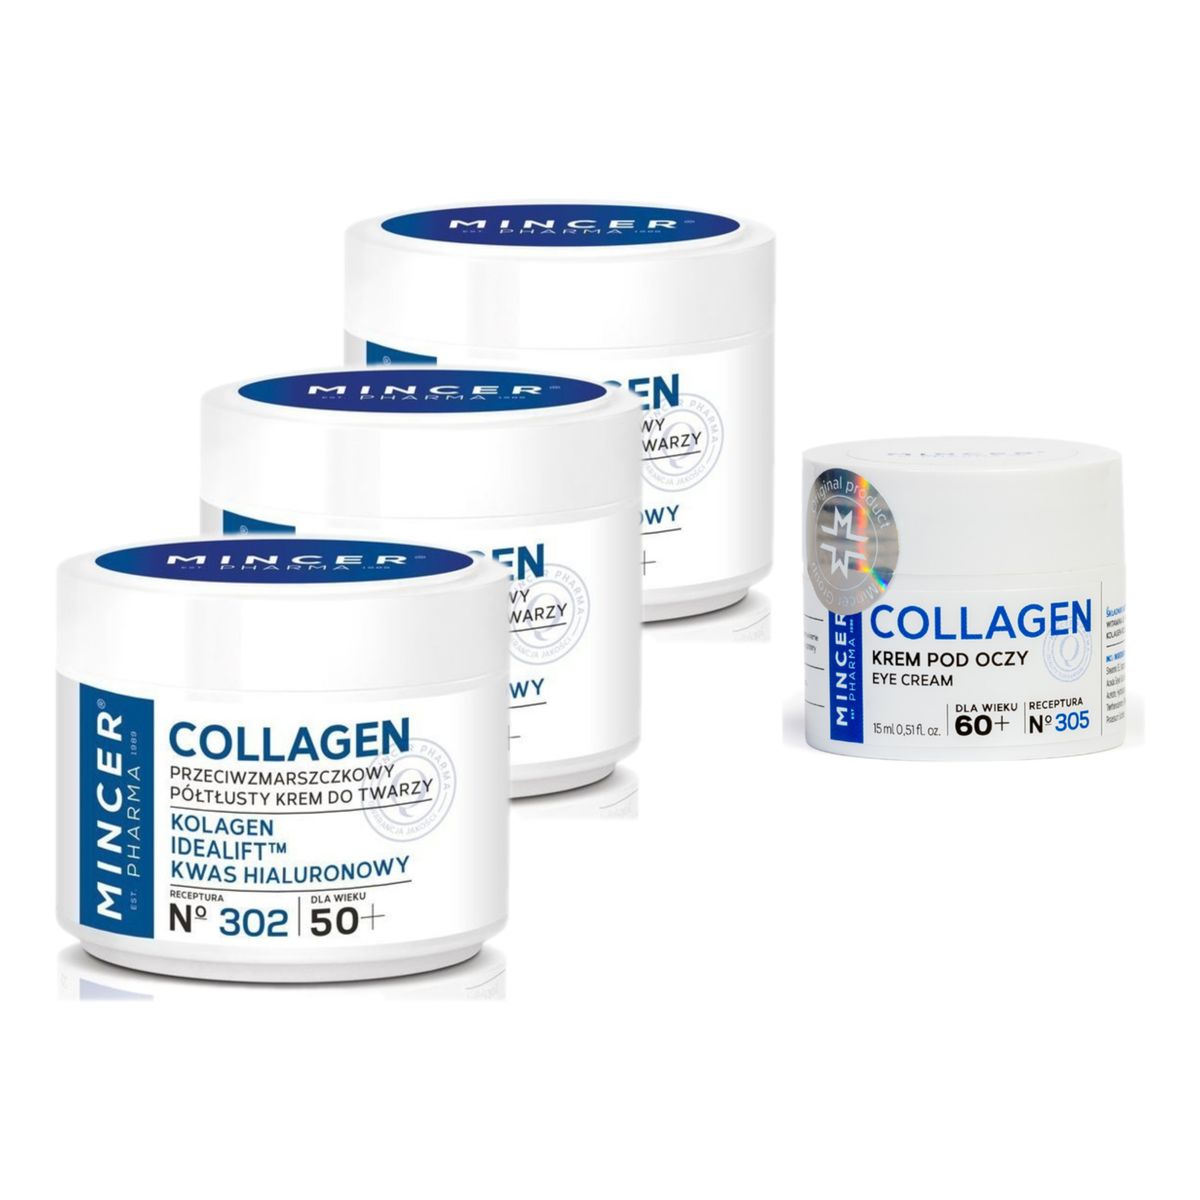 Mincer Pharma Collagen 50+ Krem półtłusty przeciwzmarszczkowy 302 3szt. + pod oczy 60+ No305